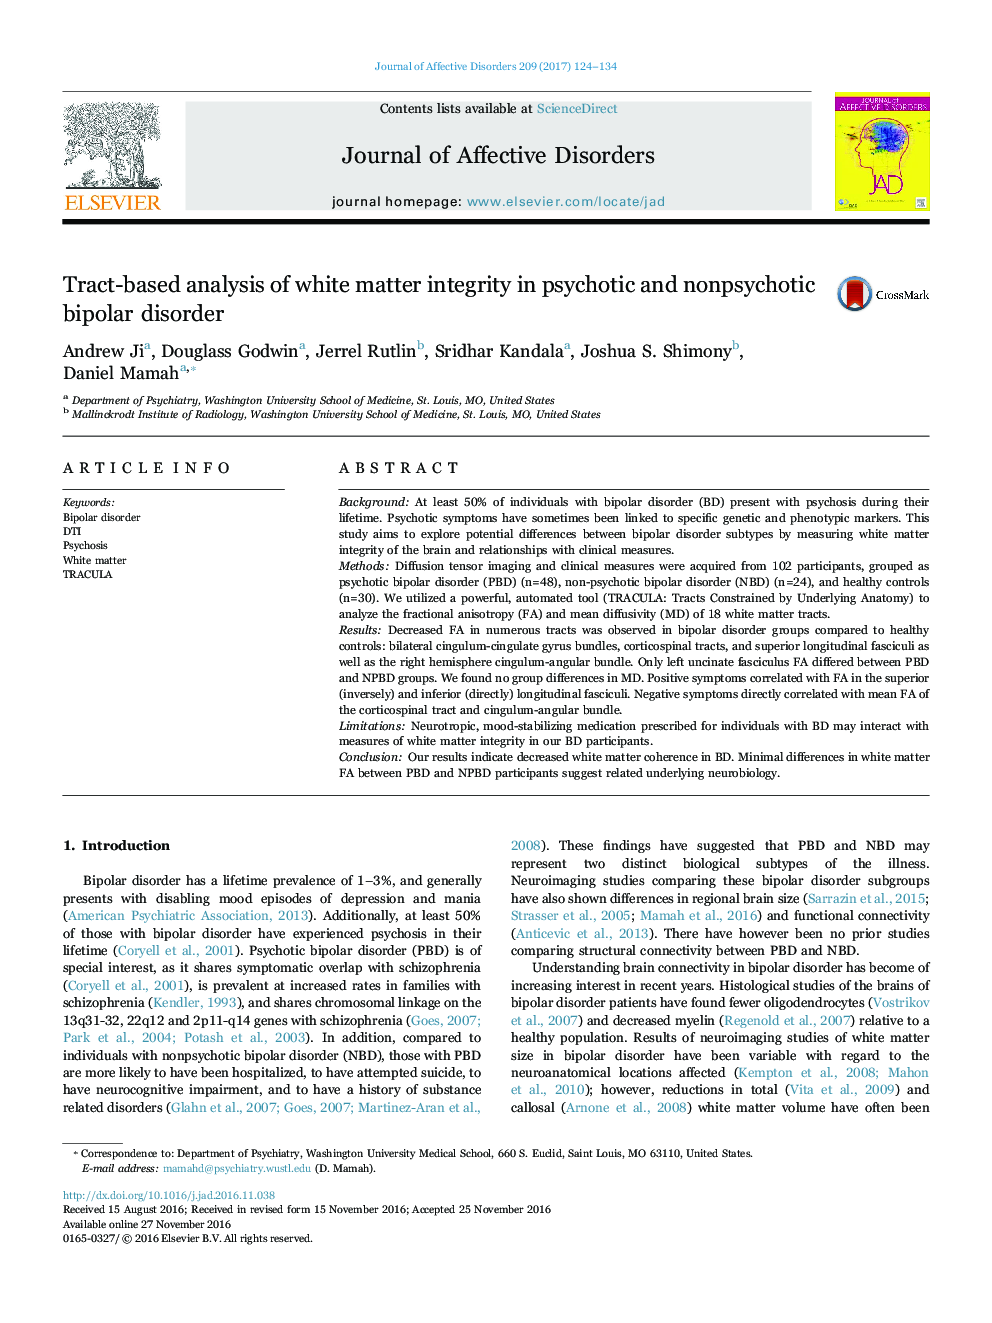 تجزیه و تحلیل مبتنی بر تراکتی یکپارچگی ماده سفید در اختلال دوقطبی روان پریشی و غیر روانی 